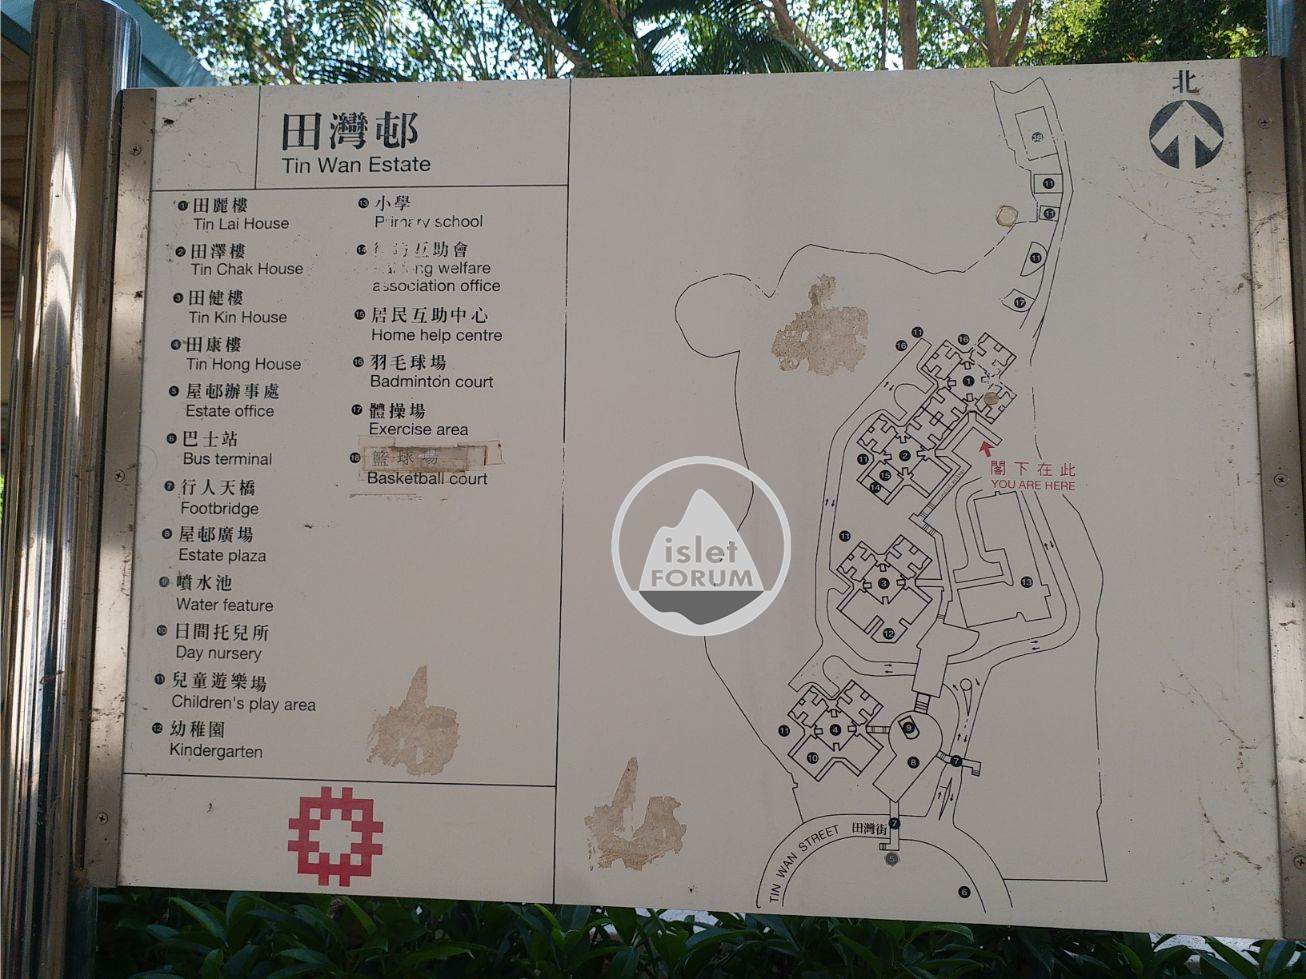 田灣邨tin wan estate4 (19).jpg